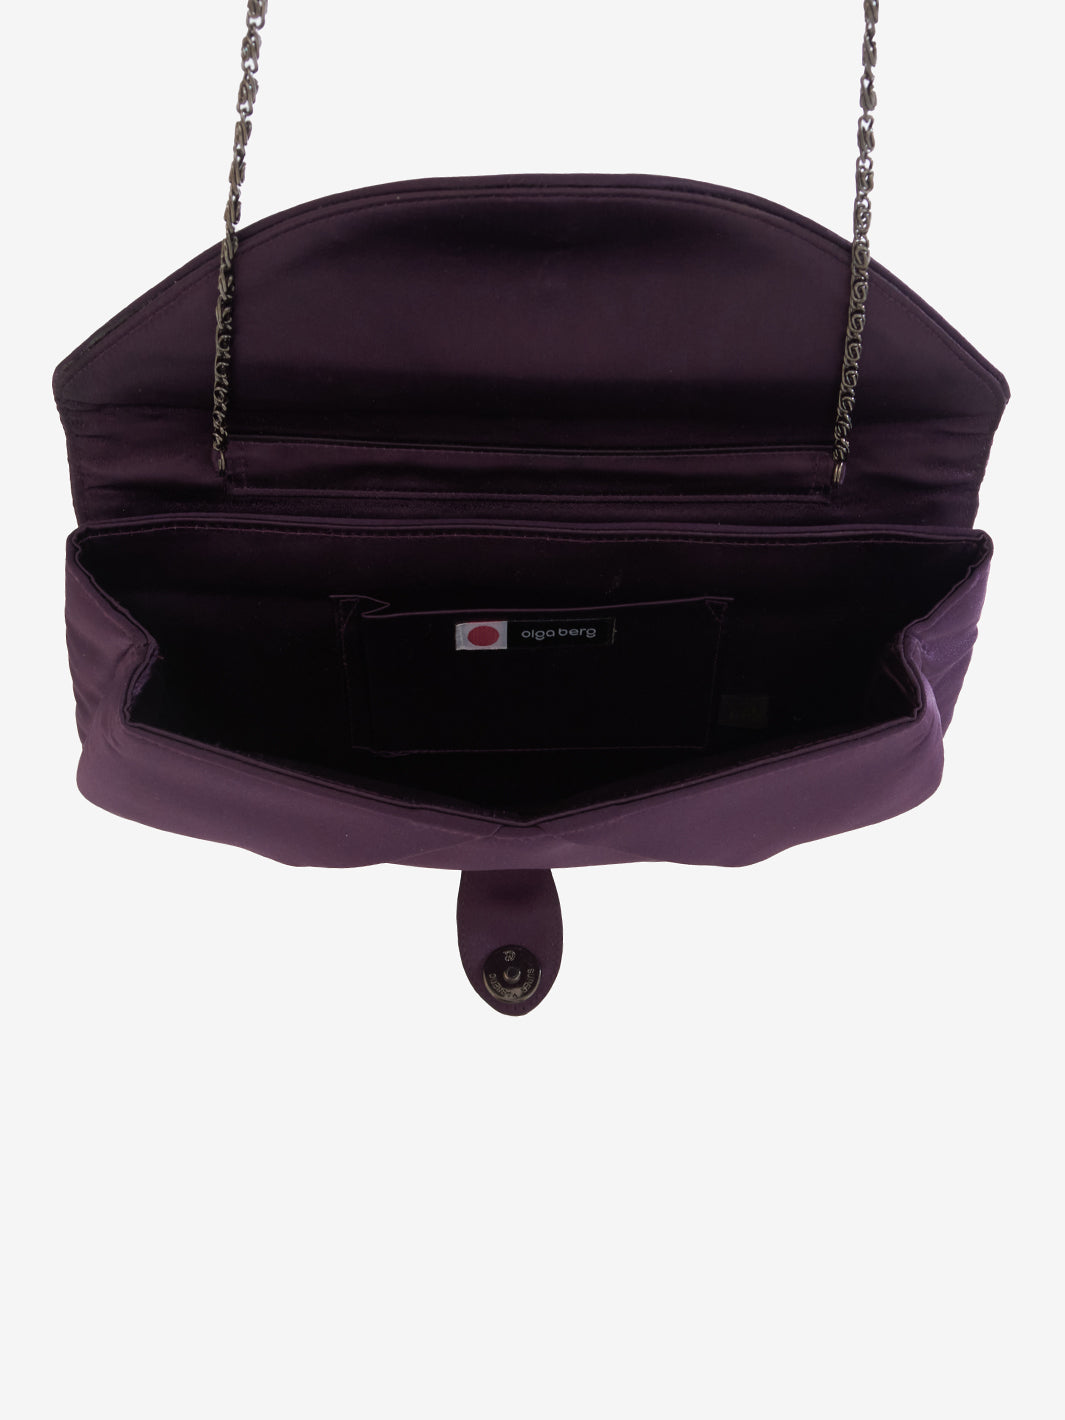 Clutch bag in purple satin